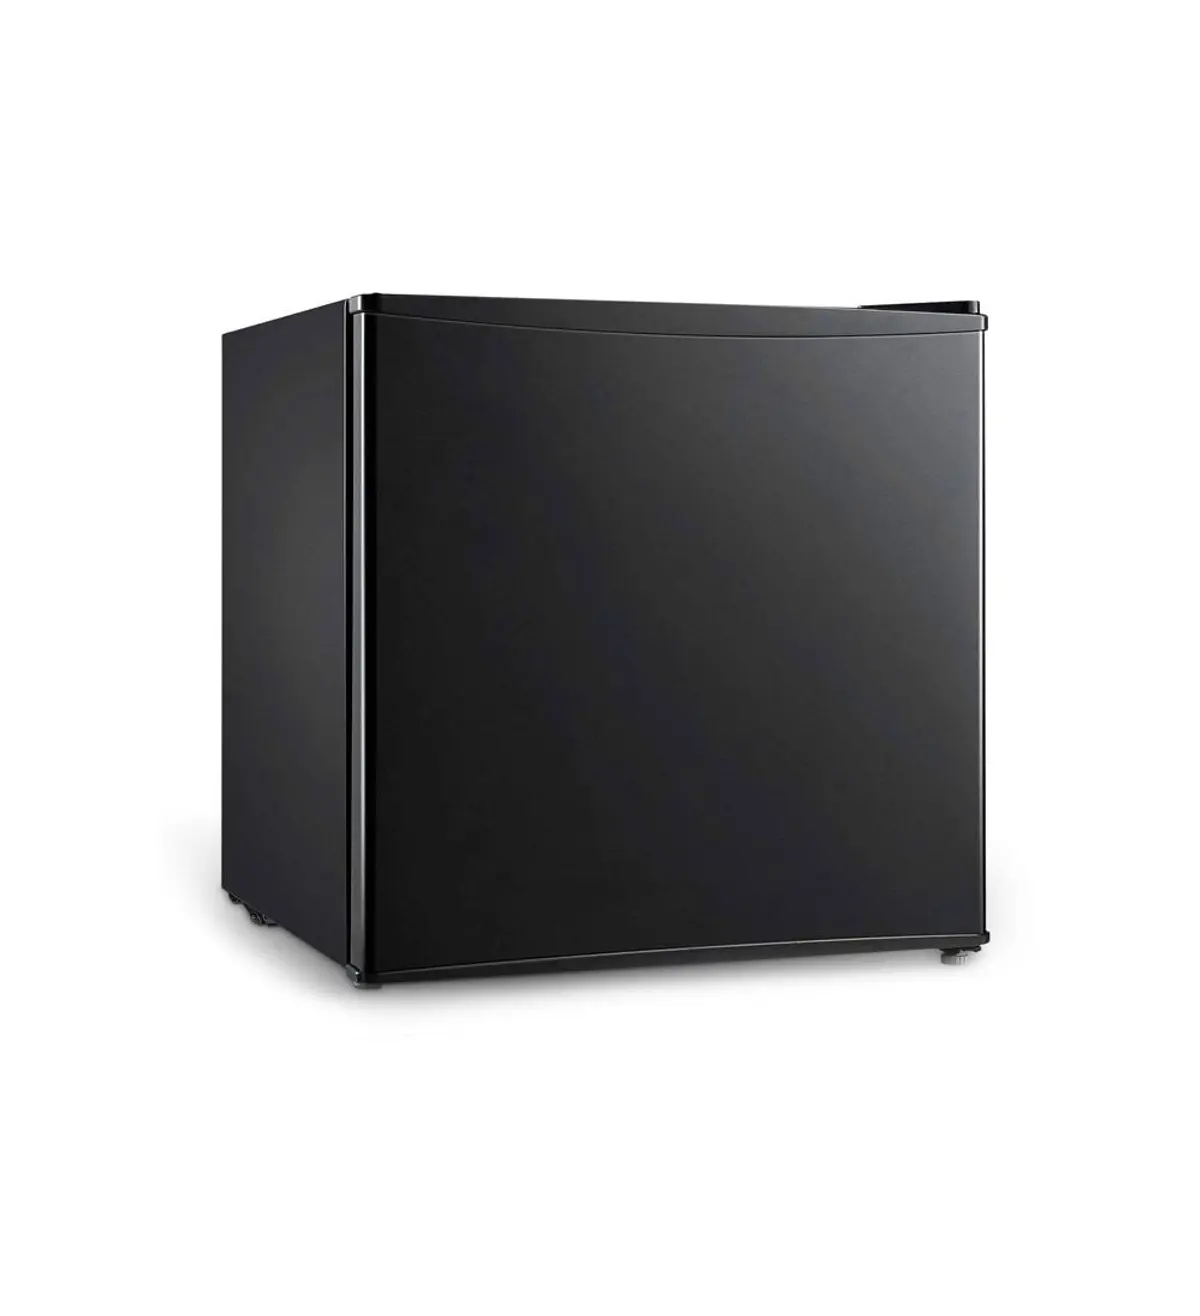 Midea 1.6 cu.ft. Refrigerator review